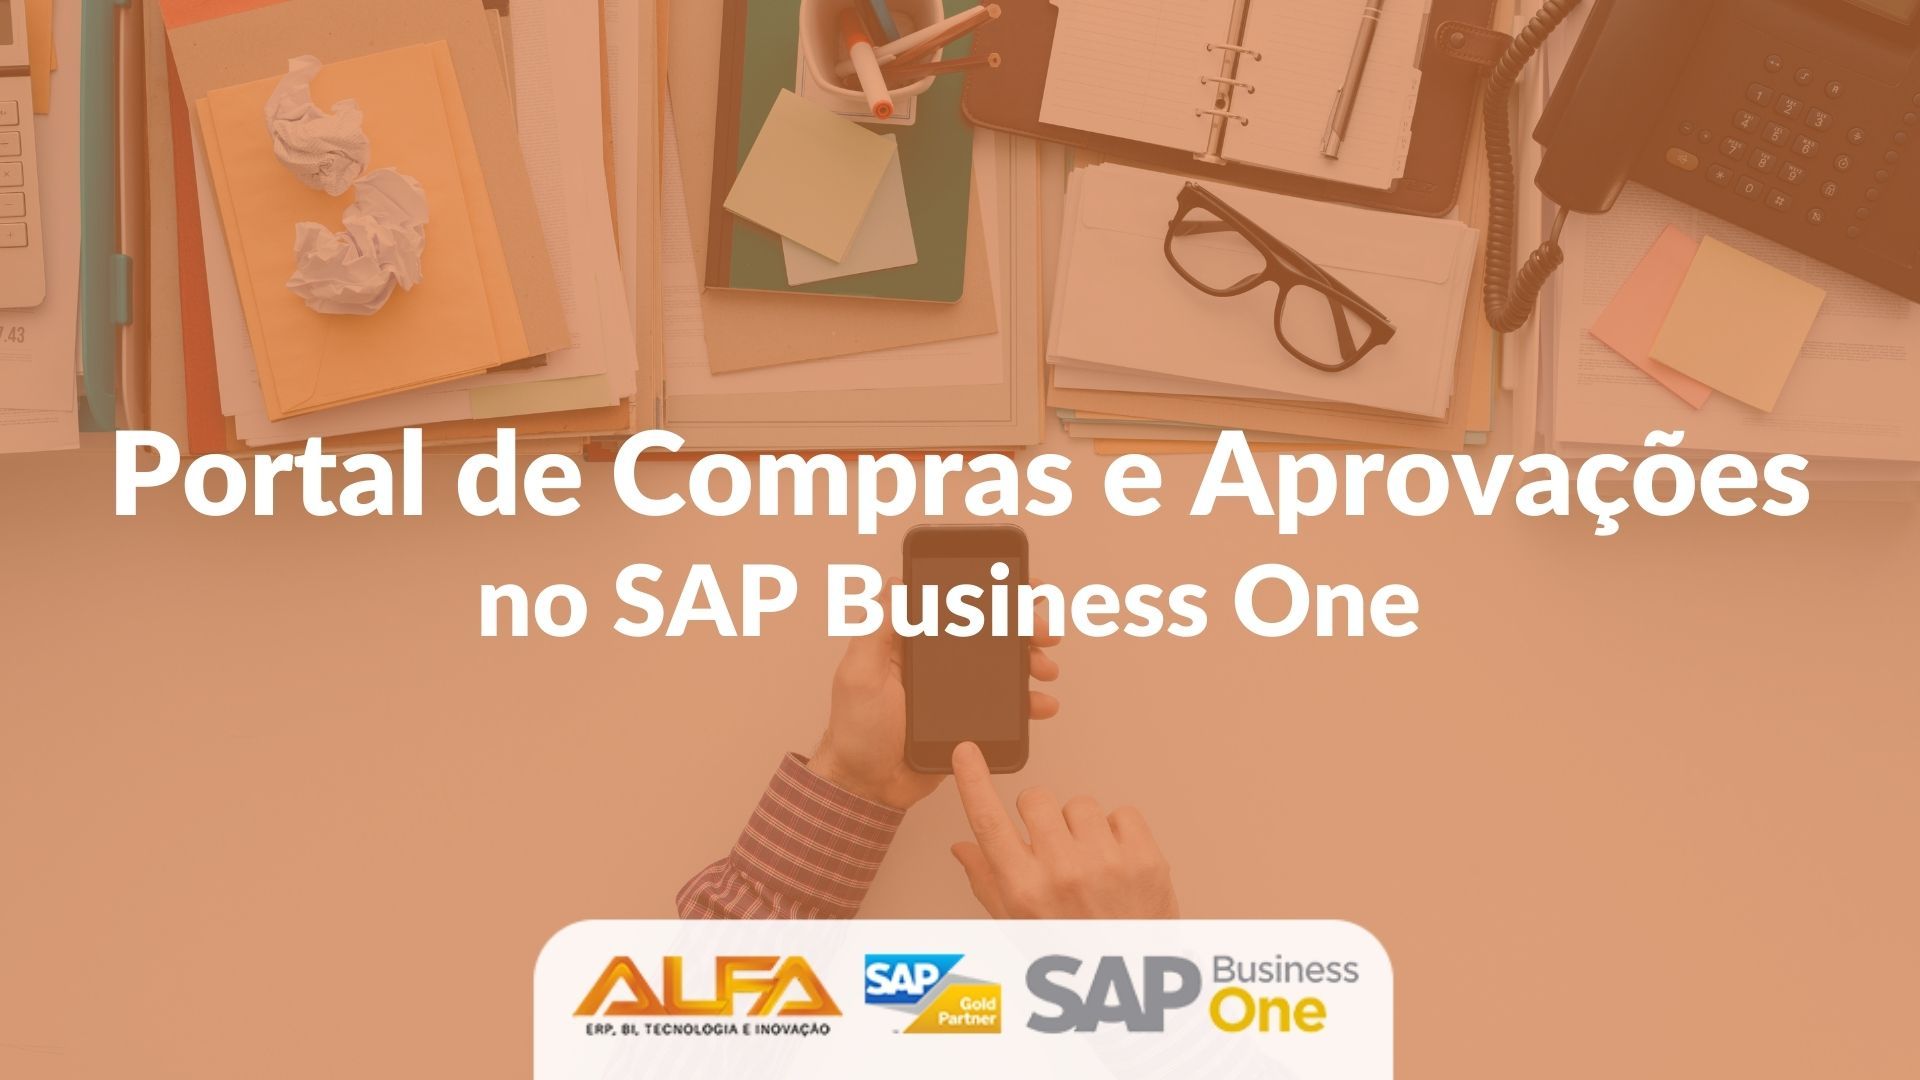 Portal de Compras e Aprovações no SAP Business One Portal de Compras e Aprovações no SAP Business One Portal de Compras e Aprovações no SAP Business One Portal de Compras e Aprovações no SAP Business One